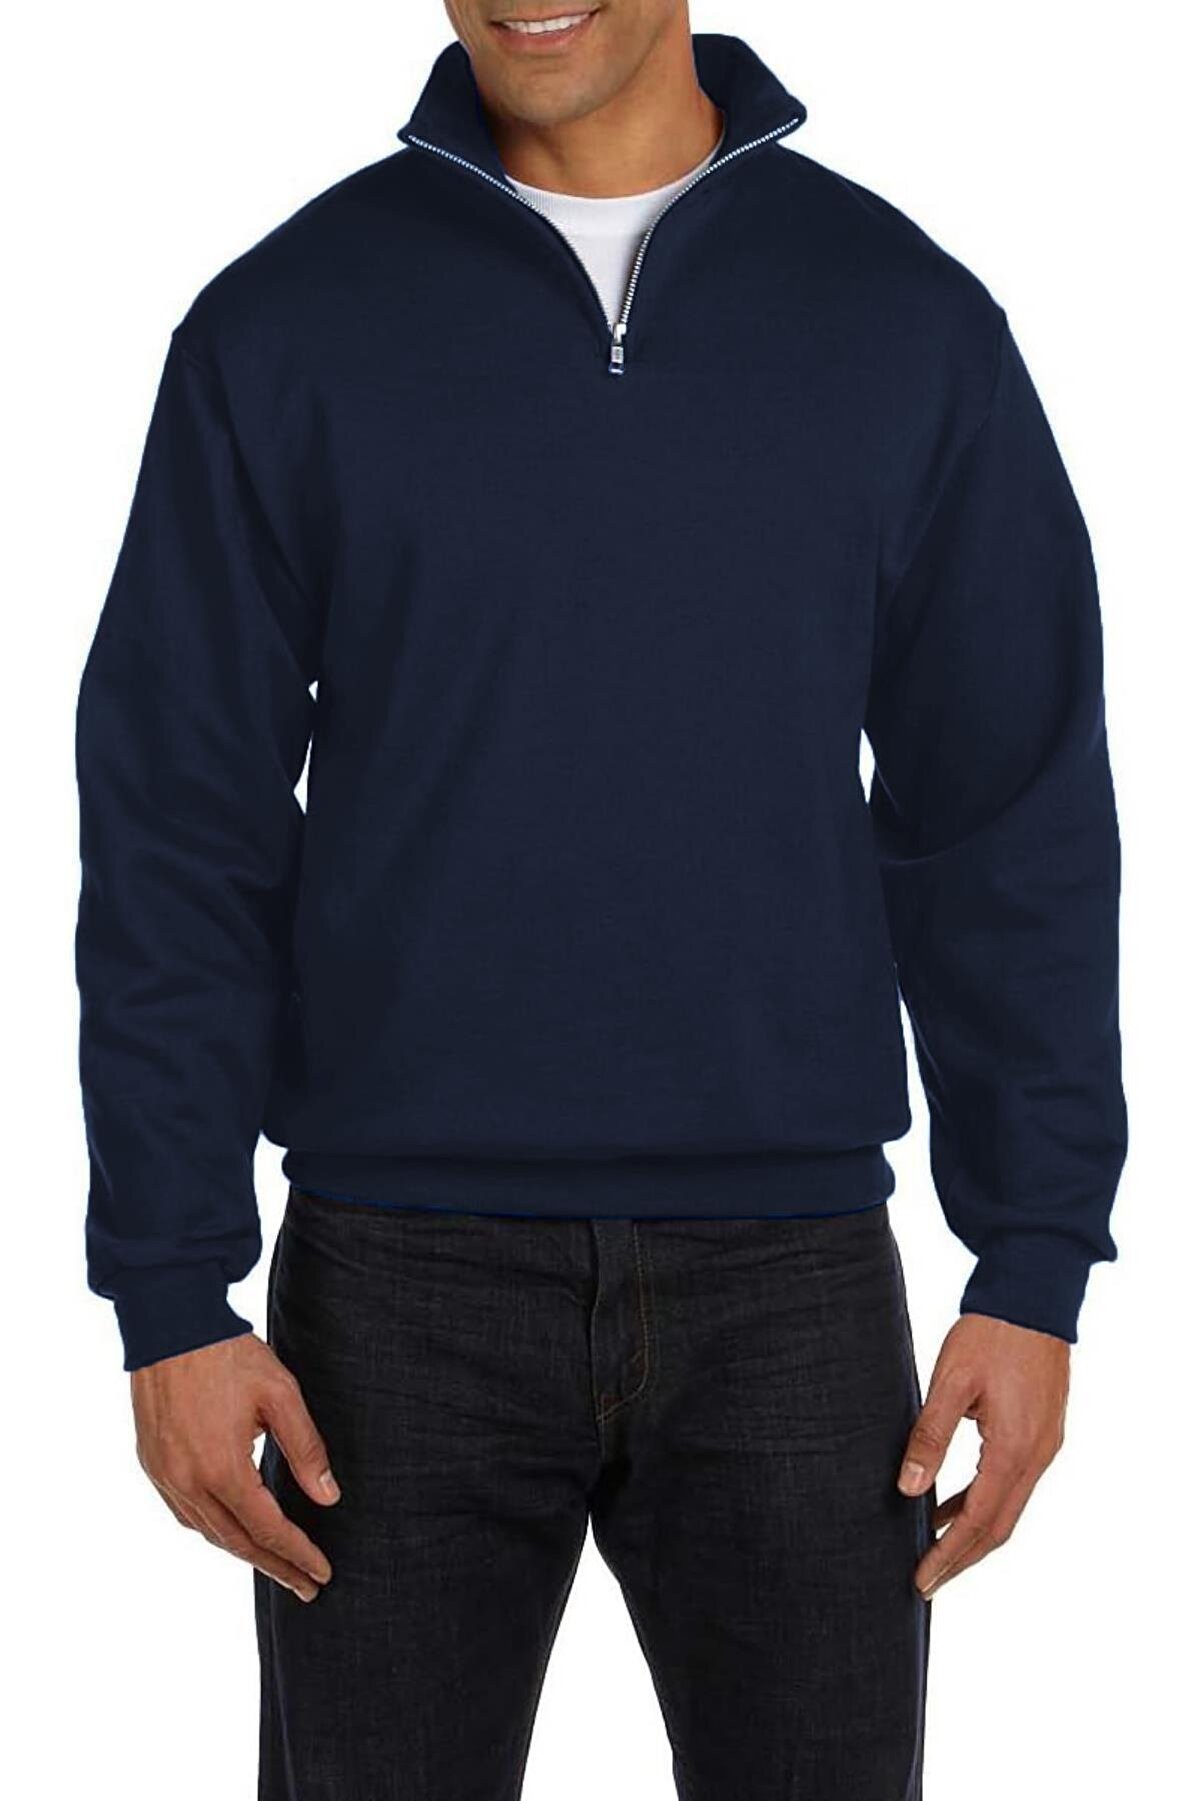 Ghassy Co Erkek Dik Yaka Silver Yarım Fermuarlı Sweatshirt - Lacivert